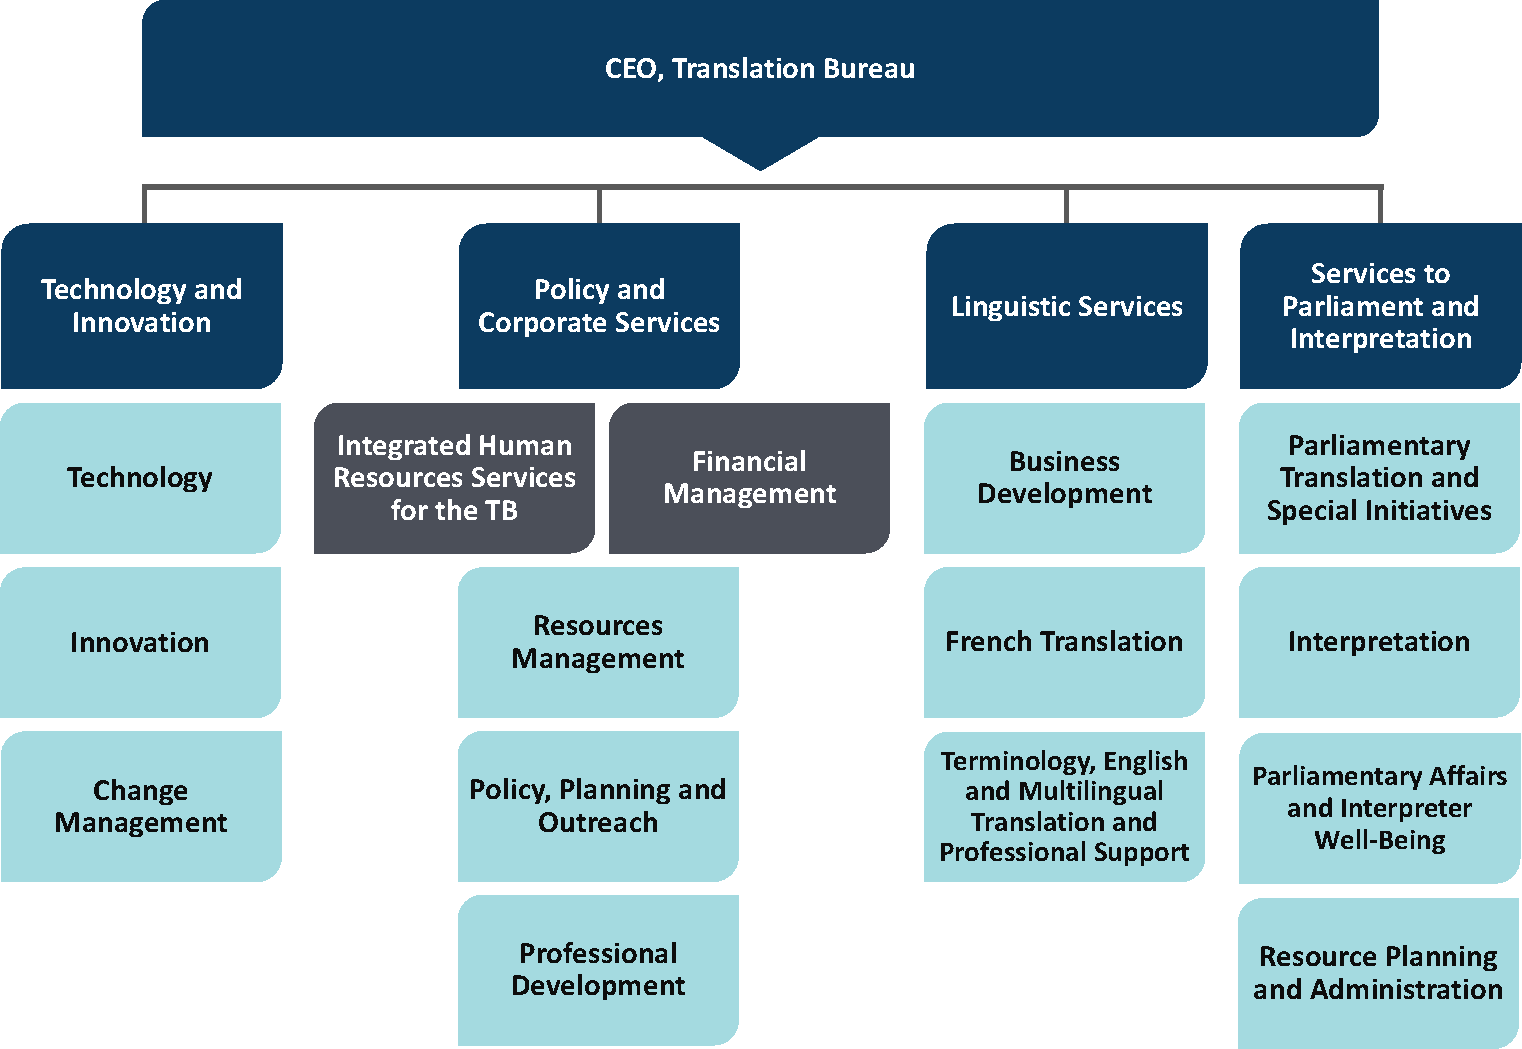 Translation Bureau organizational structure - Description below